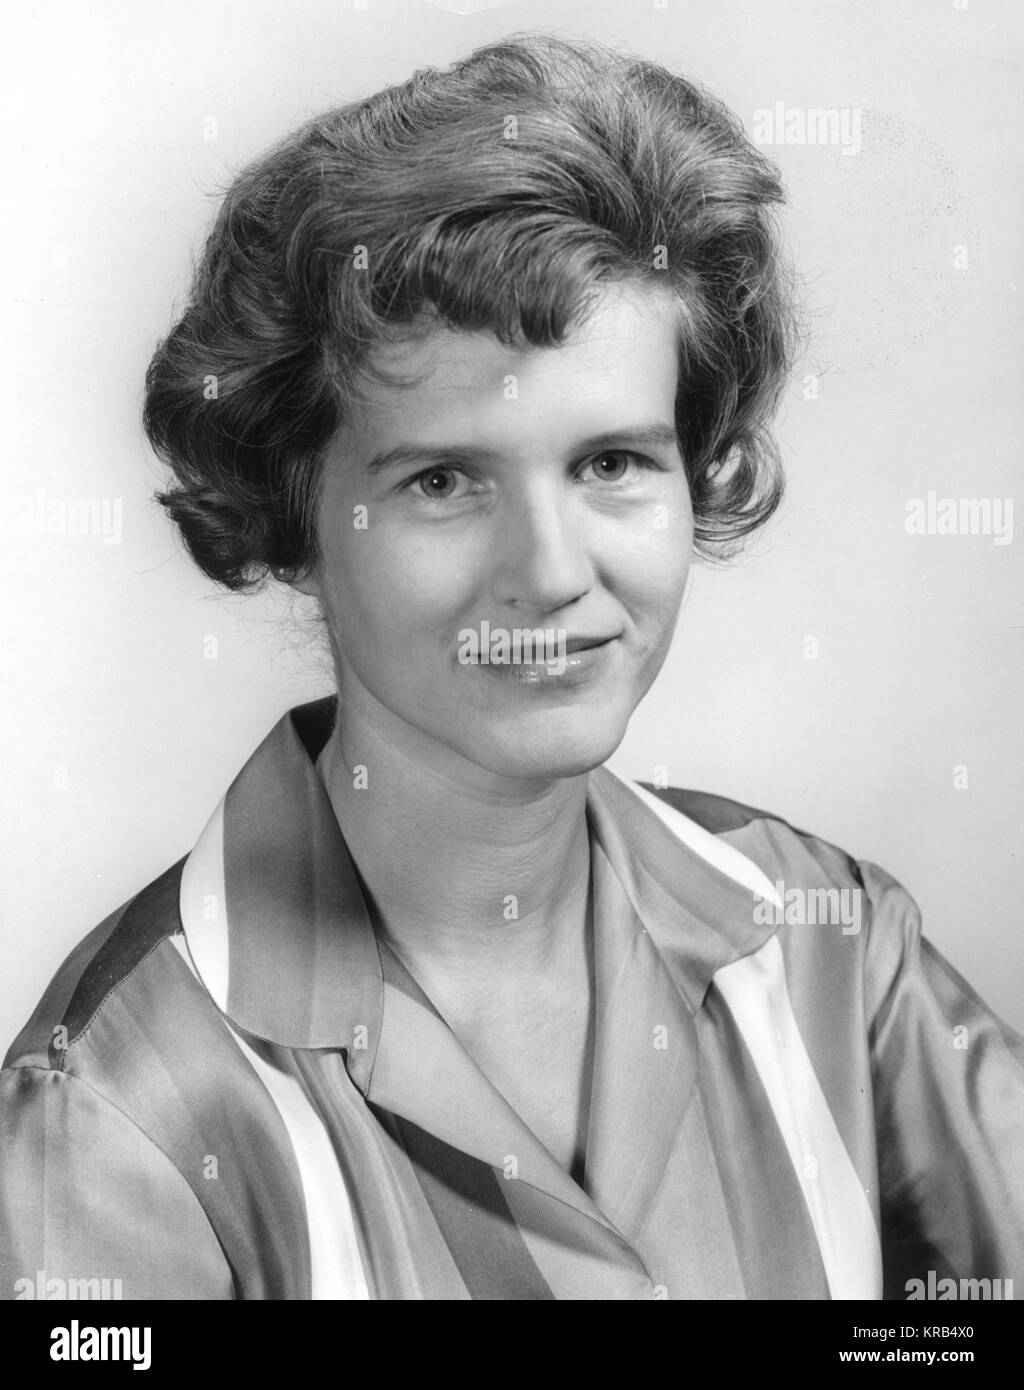 Questo è un ritratto di Maria von Braun, moglie del famoso MARSHALL SPACE flight director Wernher von Braun. Maria von Braun originale 6330121 Foto Stock